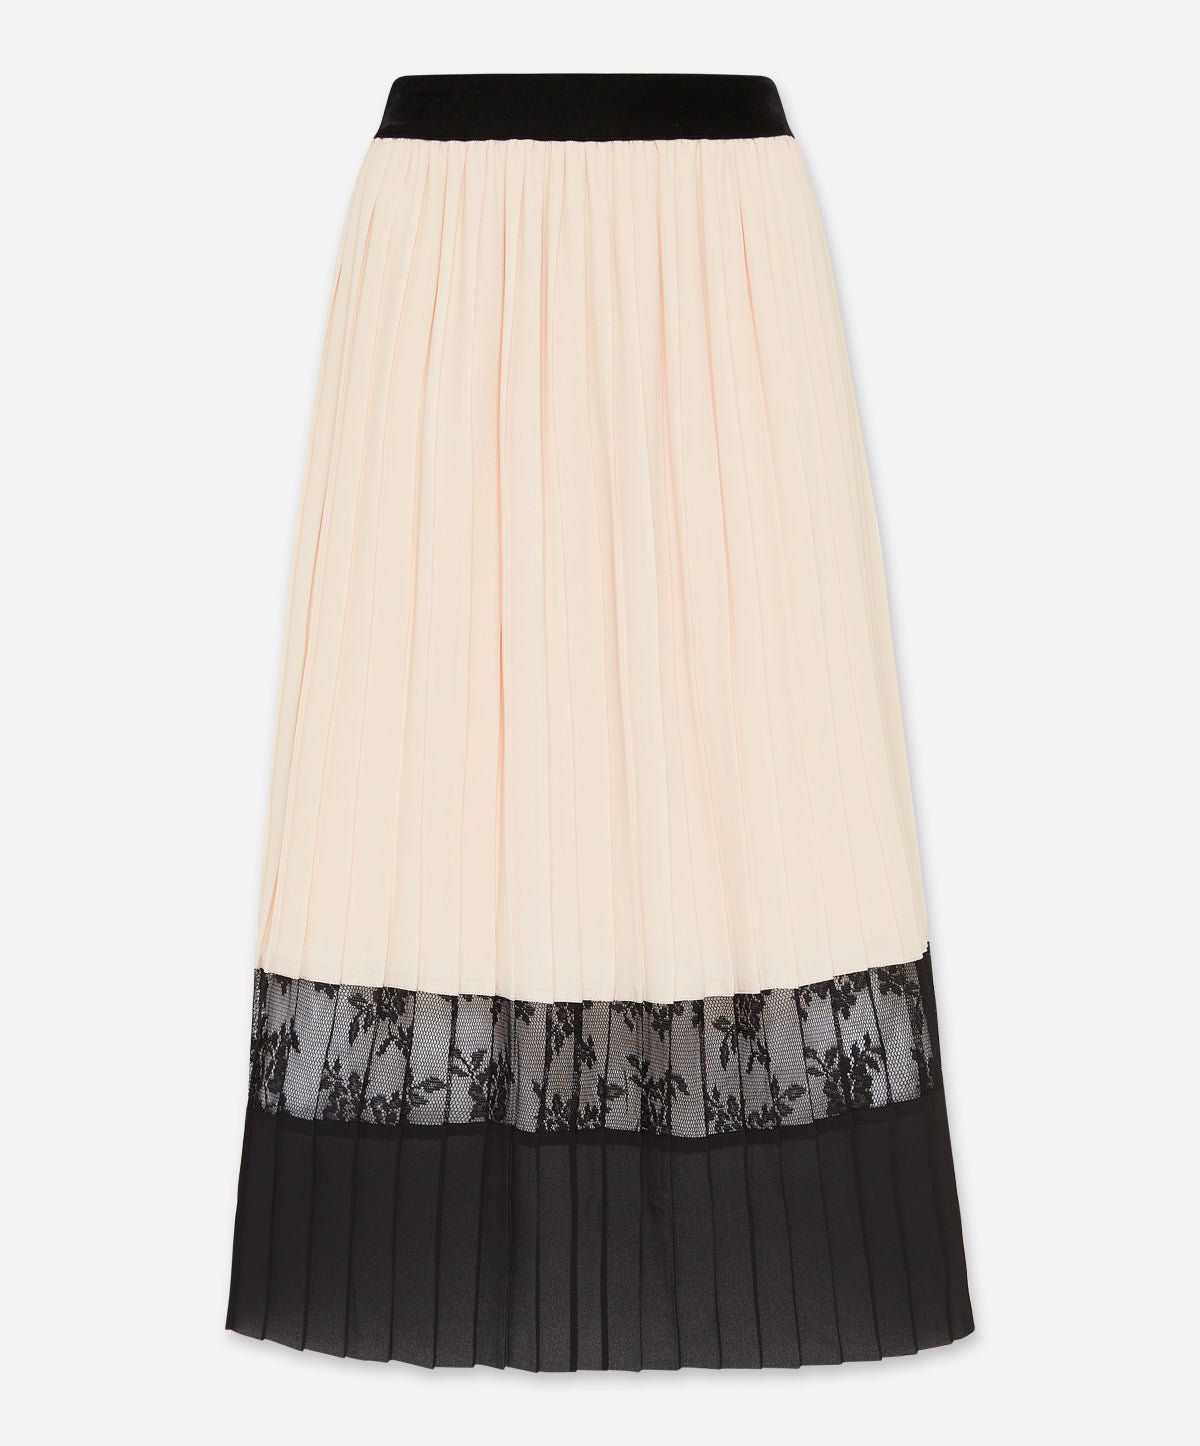 Chamonix Lace Skirt